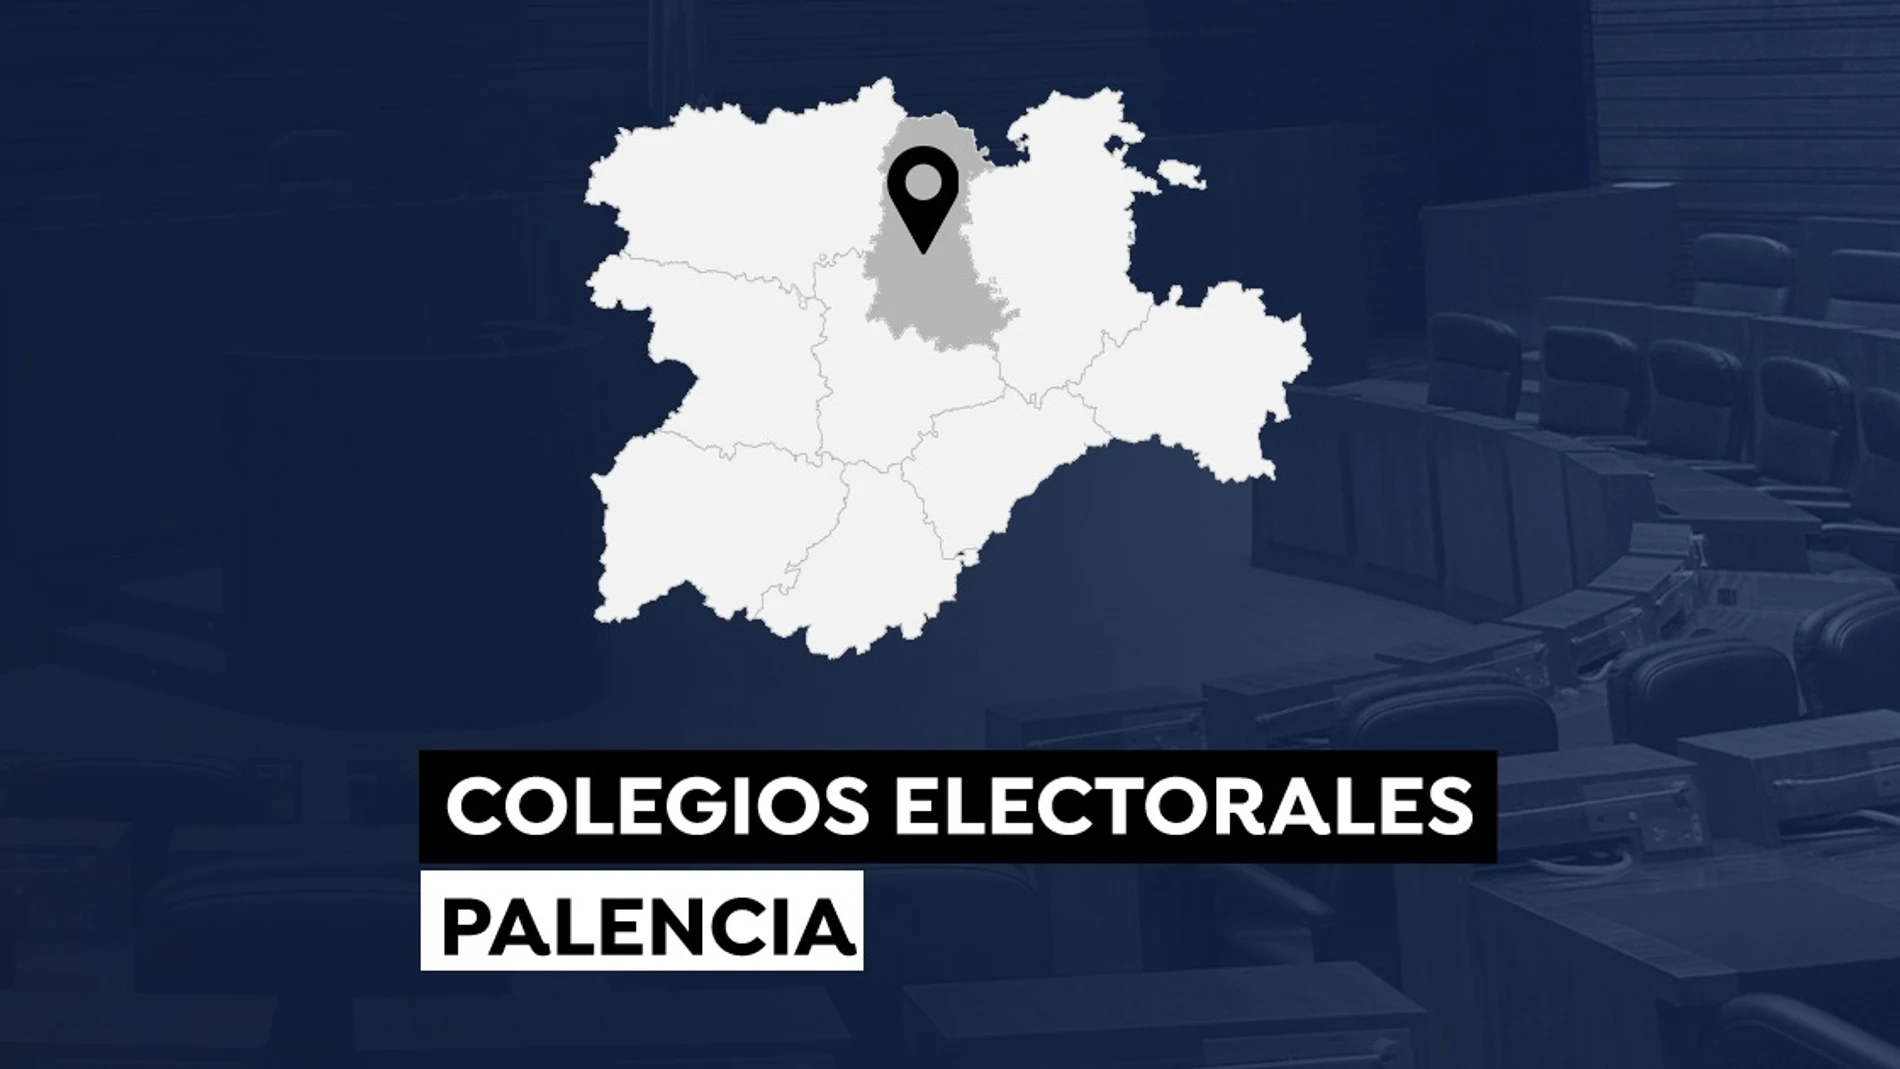 Colegios electorales en Palencia para votar en las elecciones a las Cortes de Castilla y León 2022